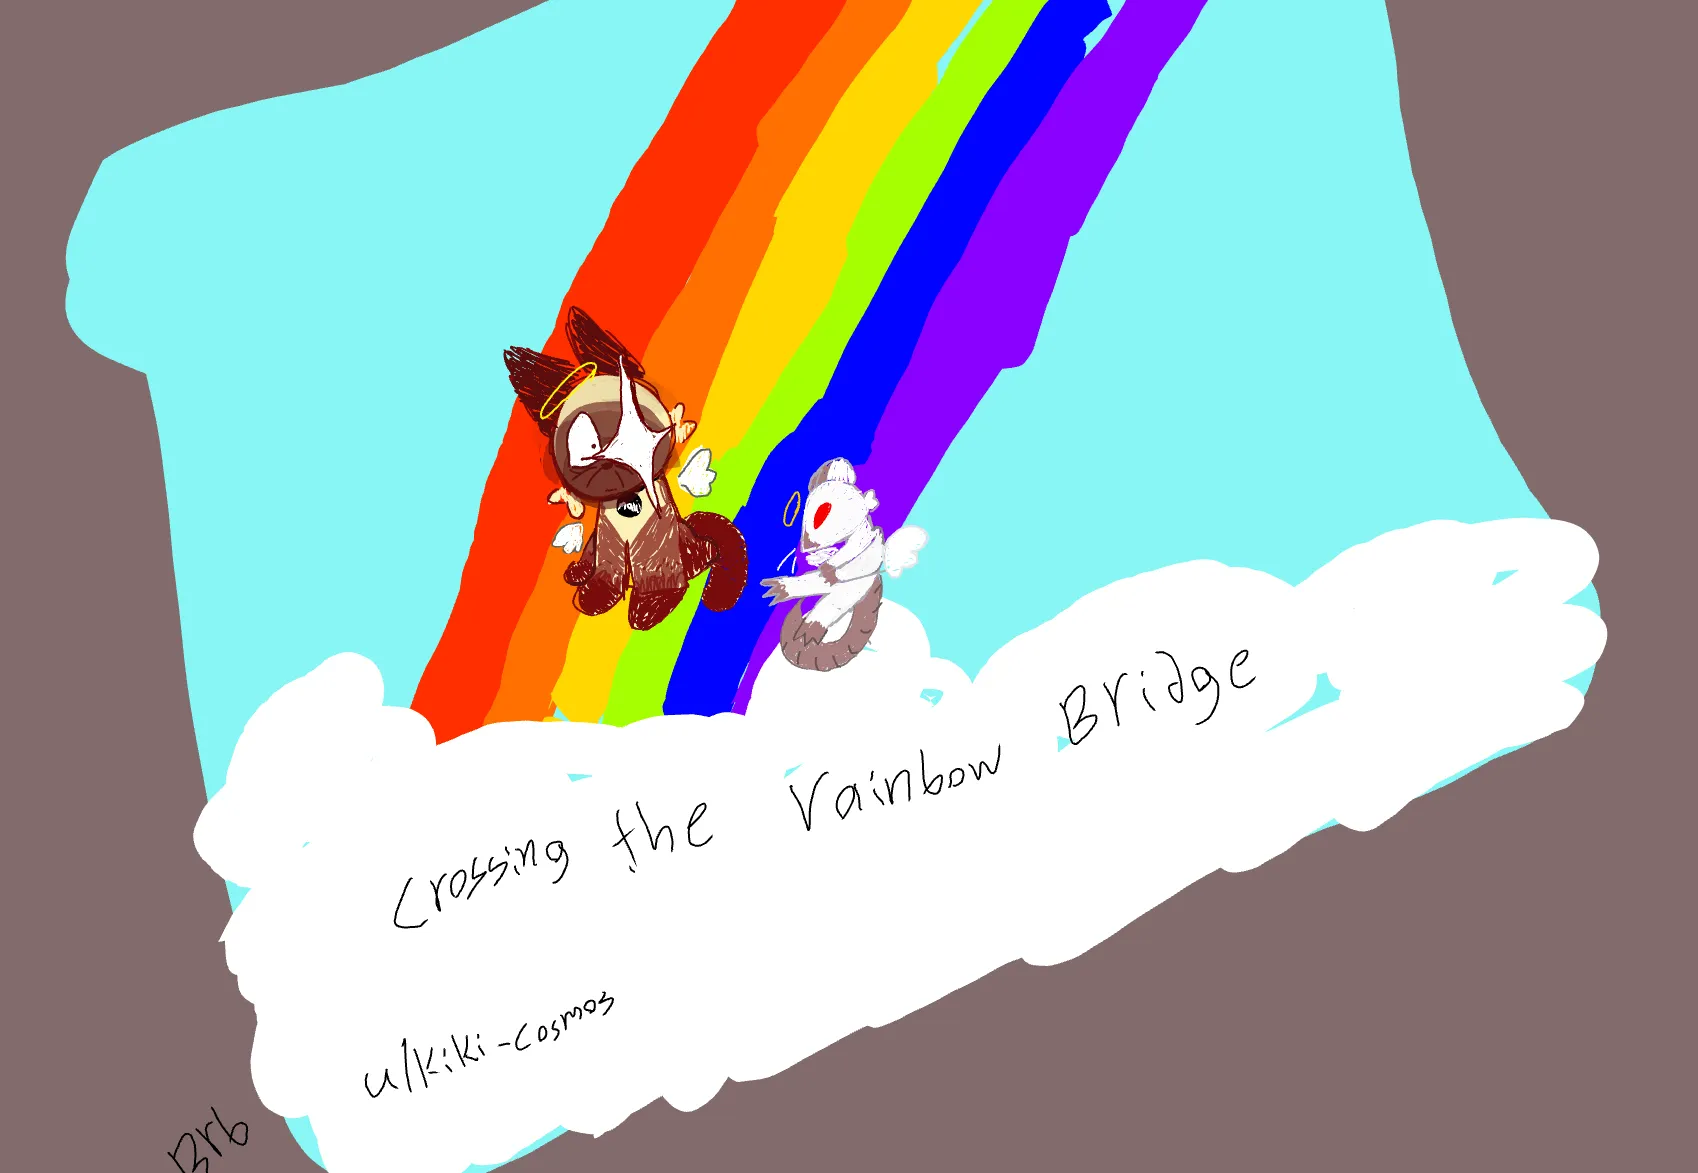 Crossing the rainbow bridge